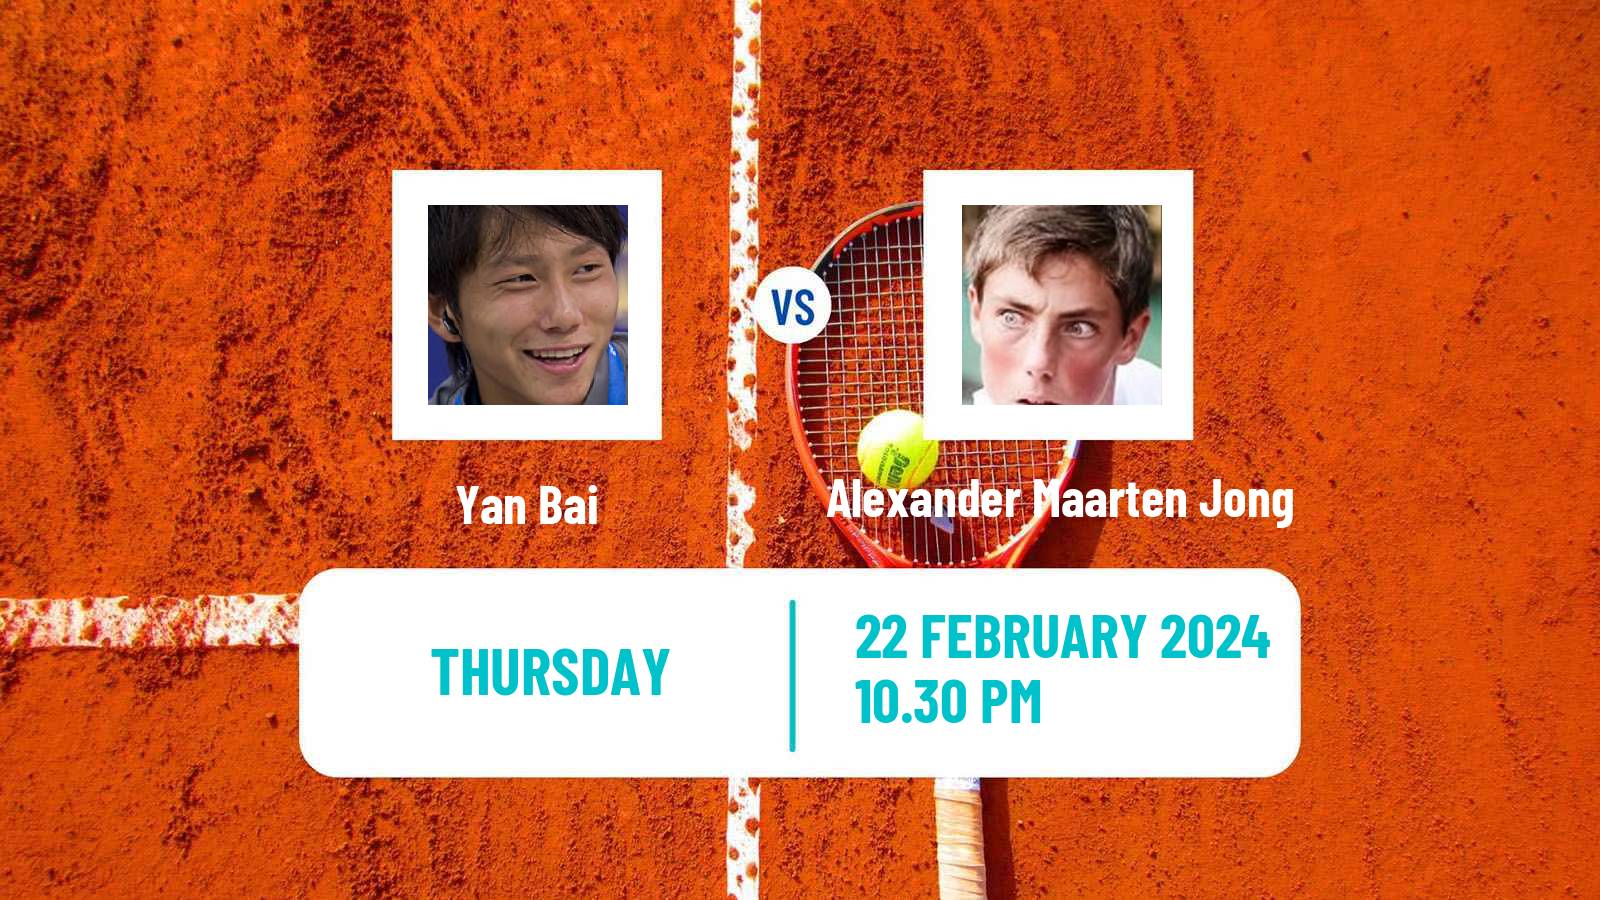 Tennis ITF M15 Nakhon Si Thammarat 2 Men Yan Bai - Alexander Maarten Jong